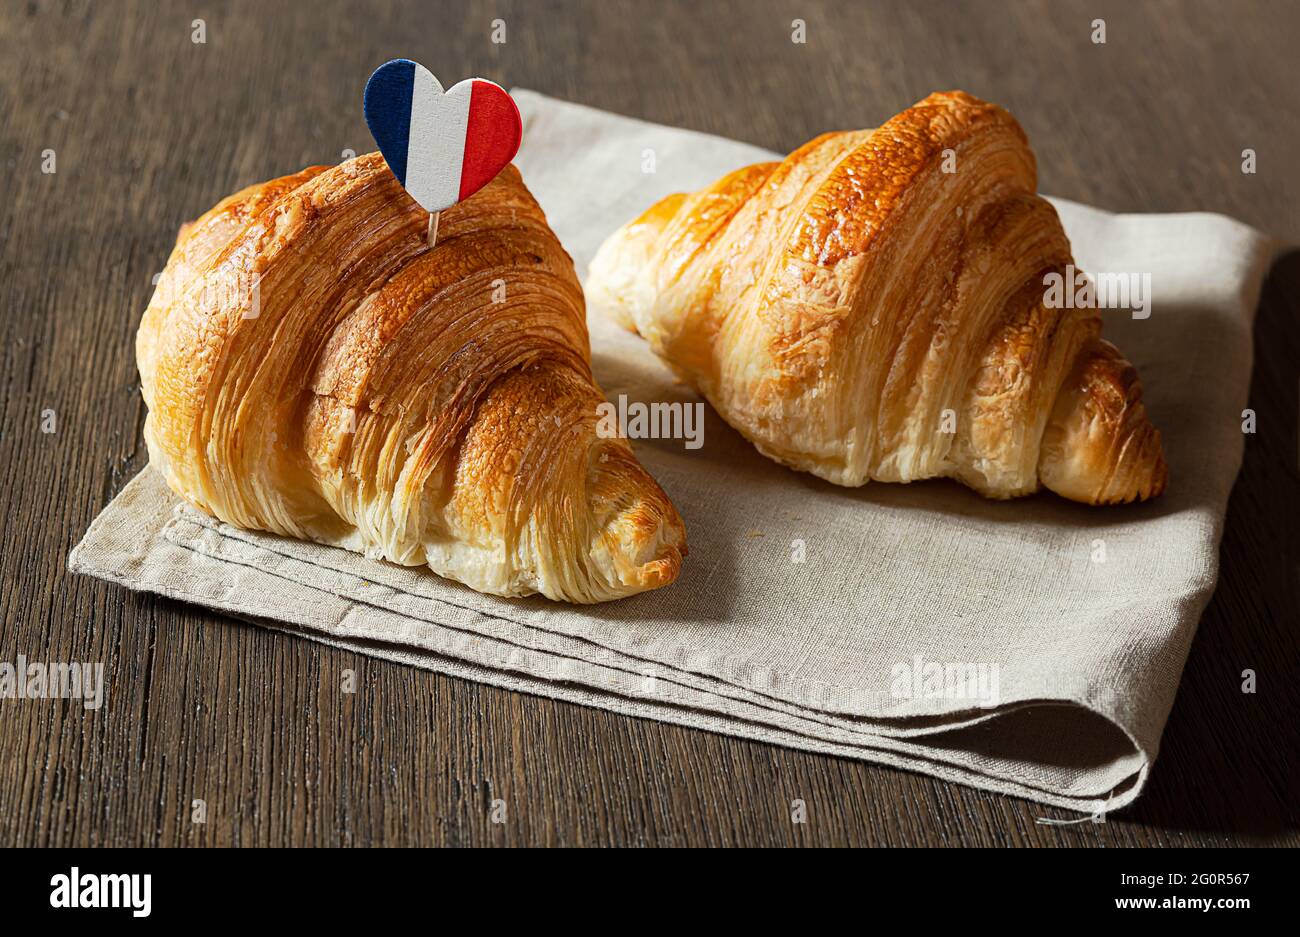 Deux croissants et un coeur aux couleurs du drapeau français sur une table Banque D'Images